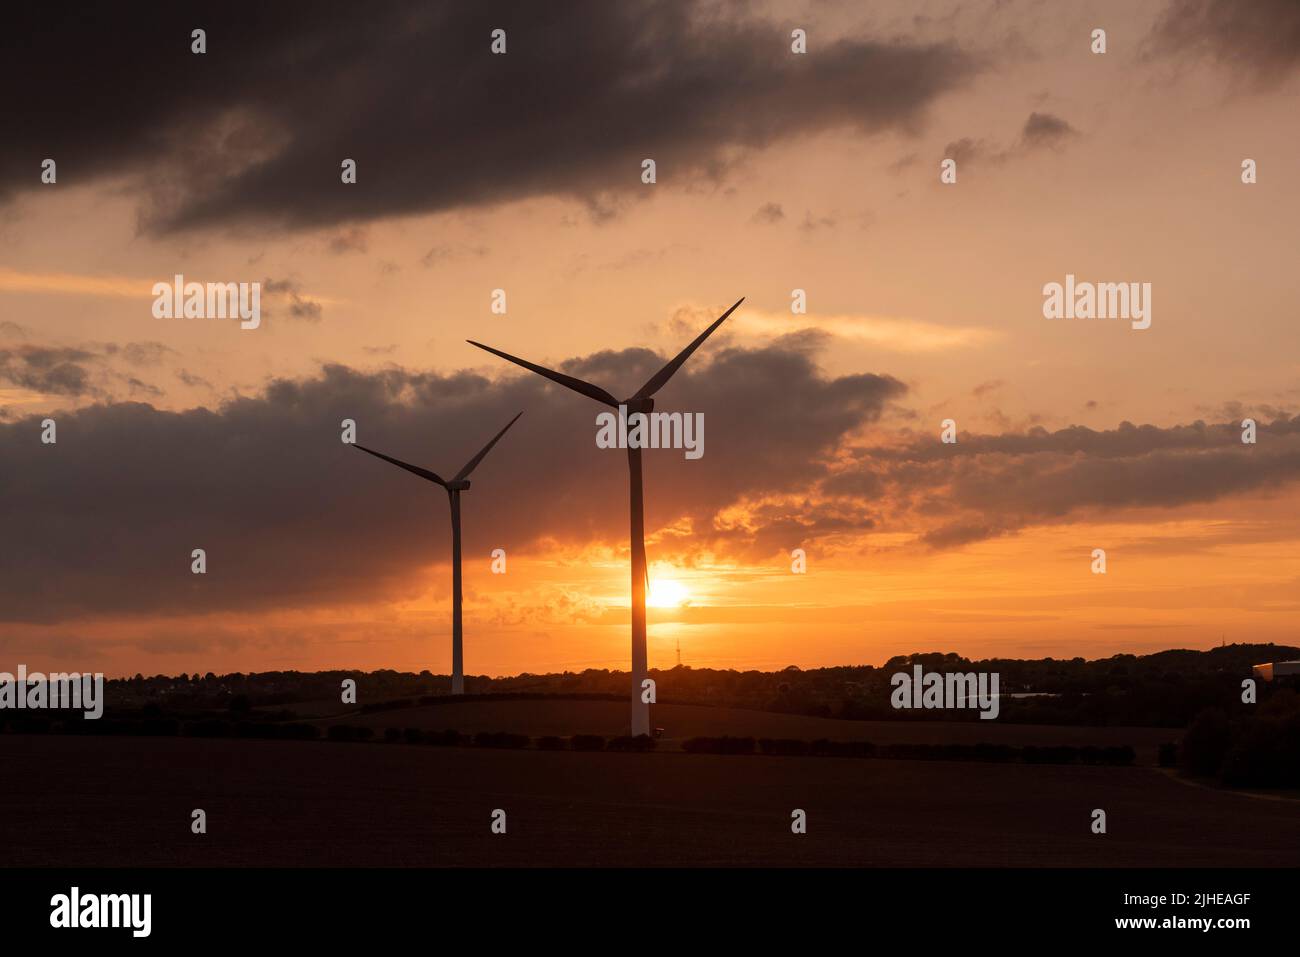 Sunset at Lindhurst wind Farm on Blidworth Lane, Rainworth Nottinghamshire England UK Stock Photo